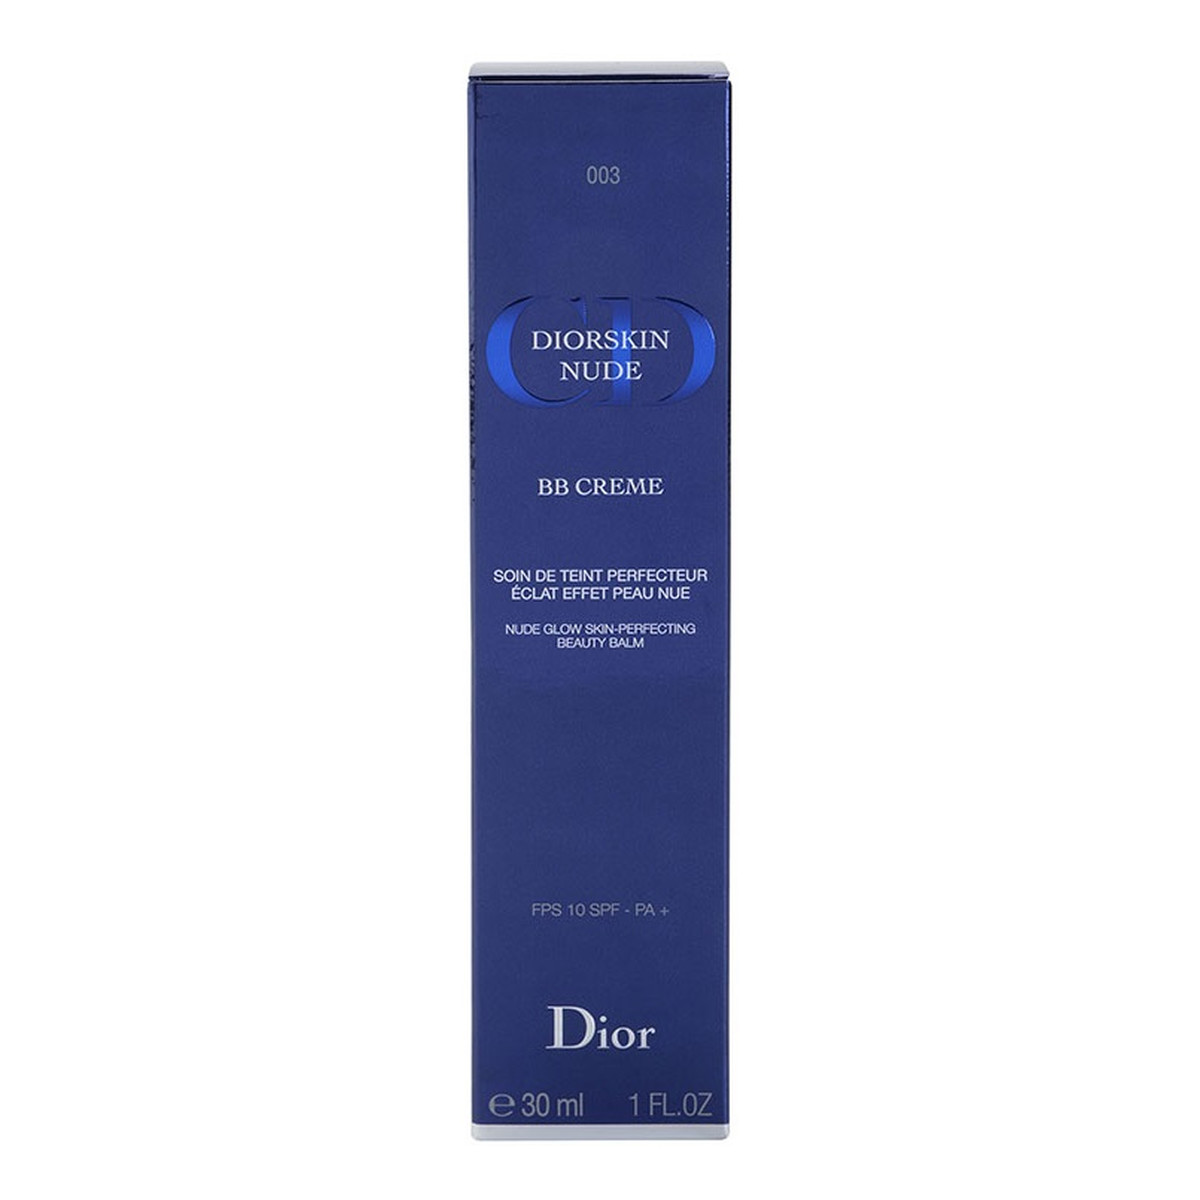 Dior Diorskin Nude Rozjaśniający krem BB (BB Creme Nude Glow Skin Perfecting Beauty Balm) SPF 10 30ml